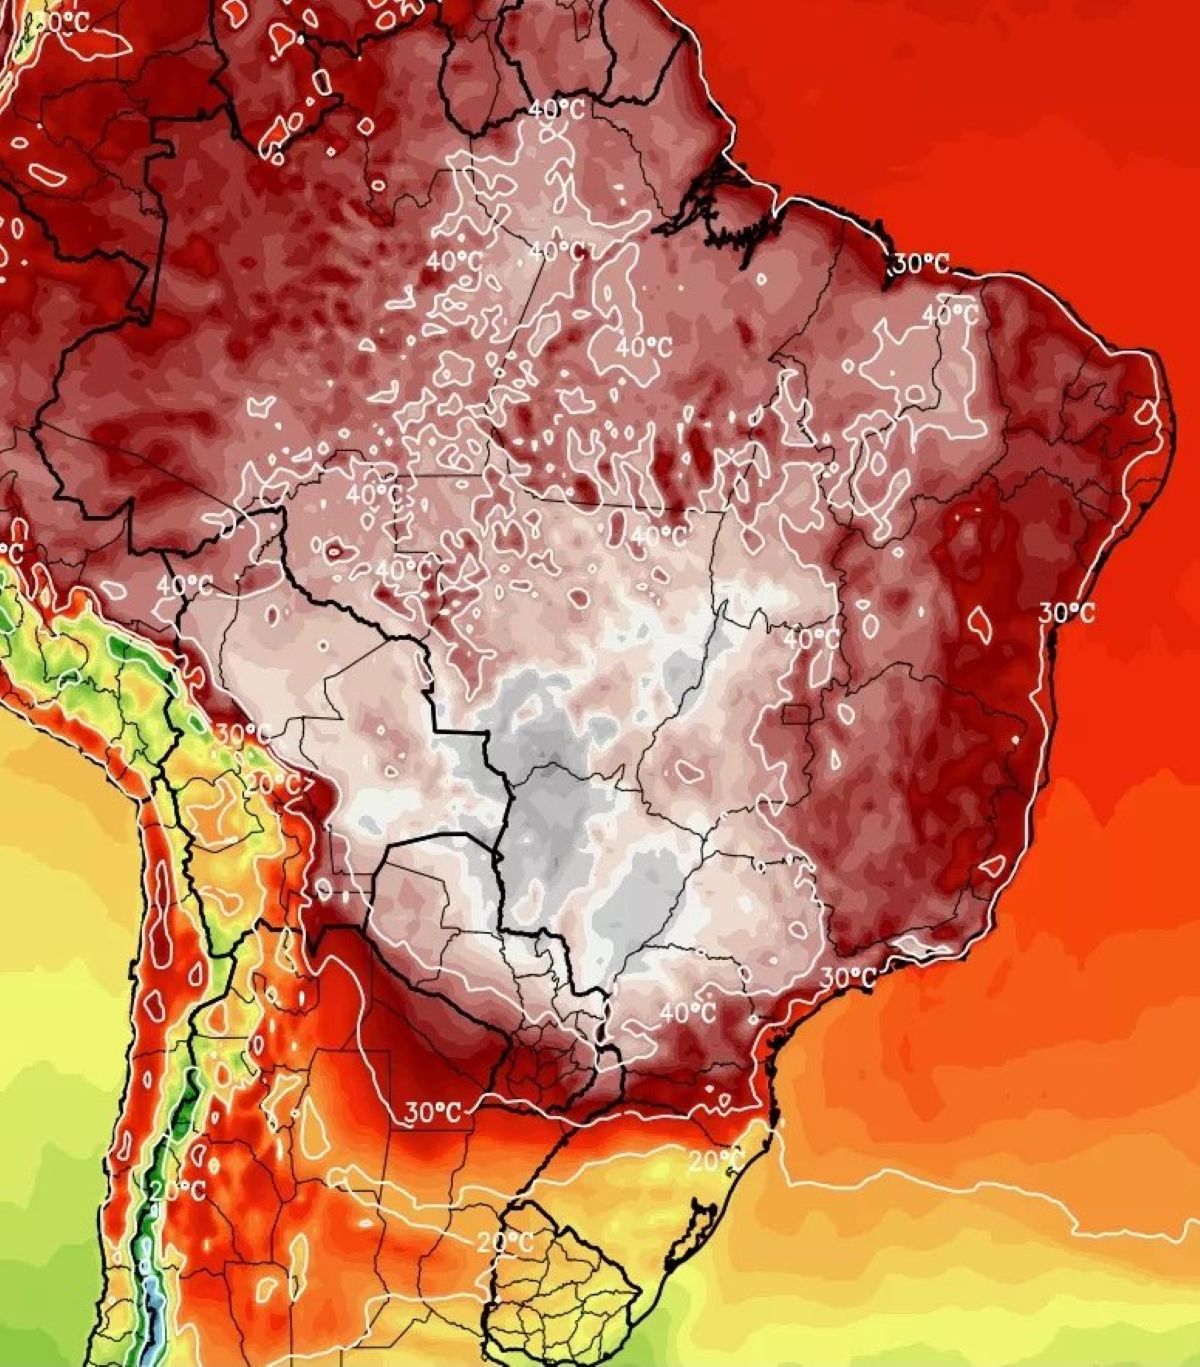 MetSul anunció ola de calor extrema y peligrosa en Brasil